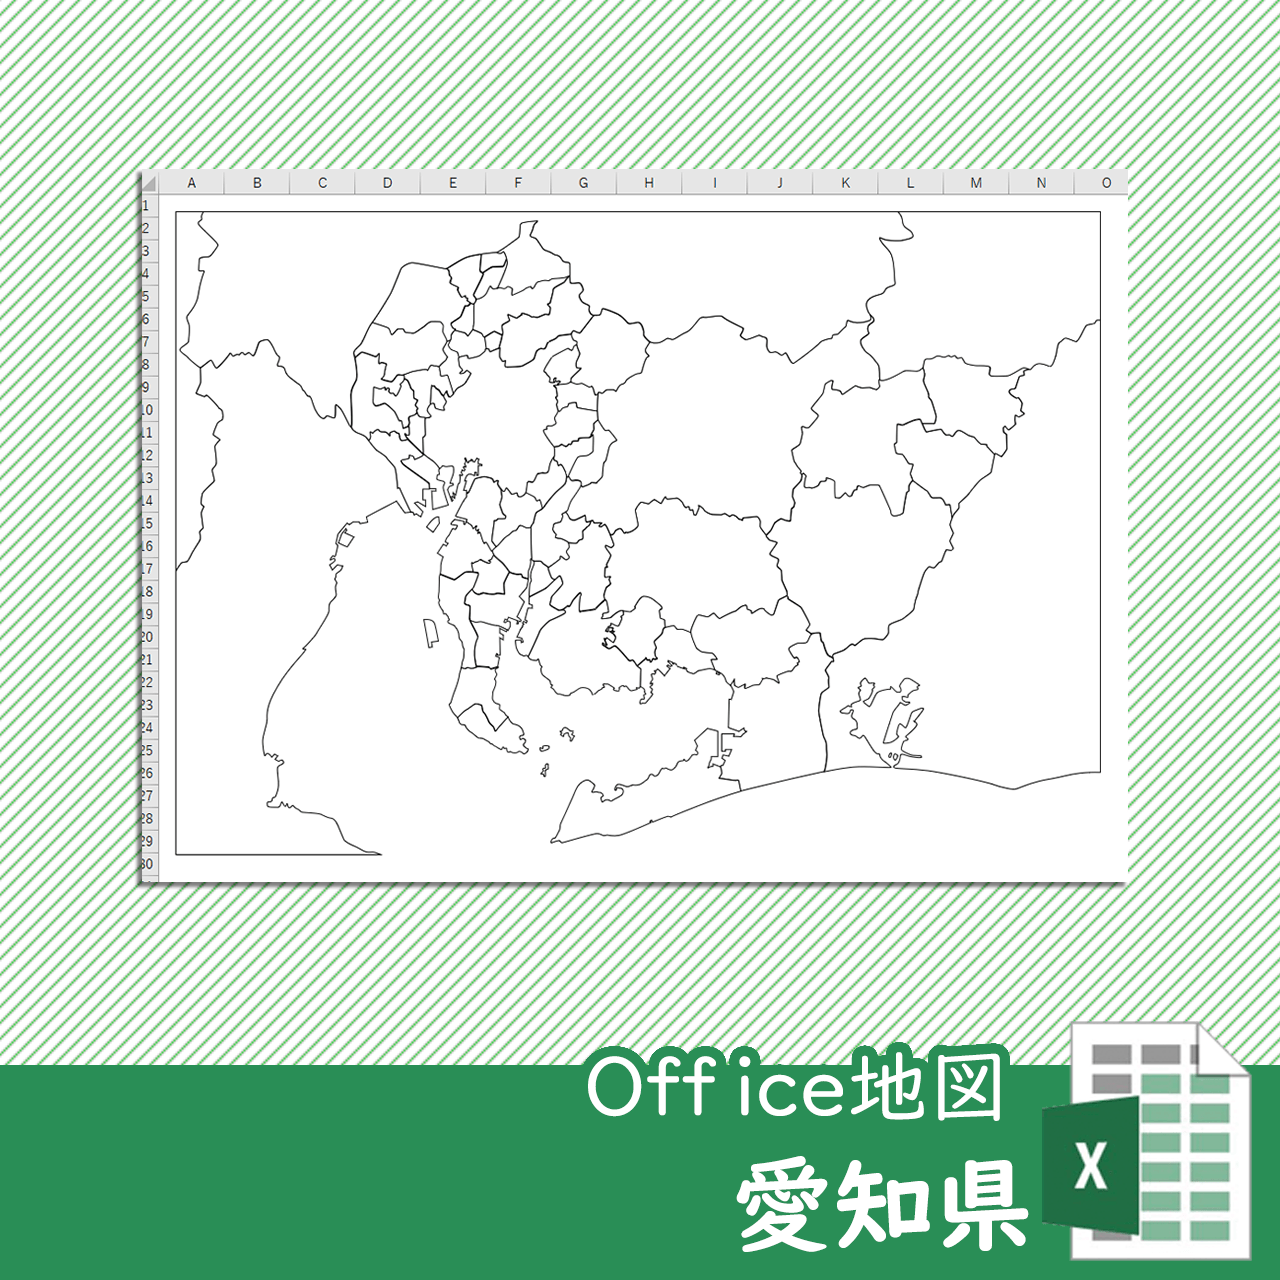 愛知県のOffice地図のサムネイル